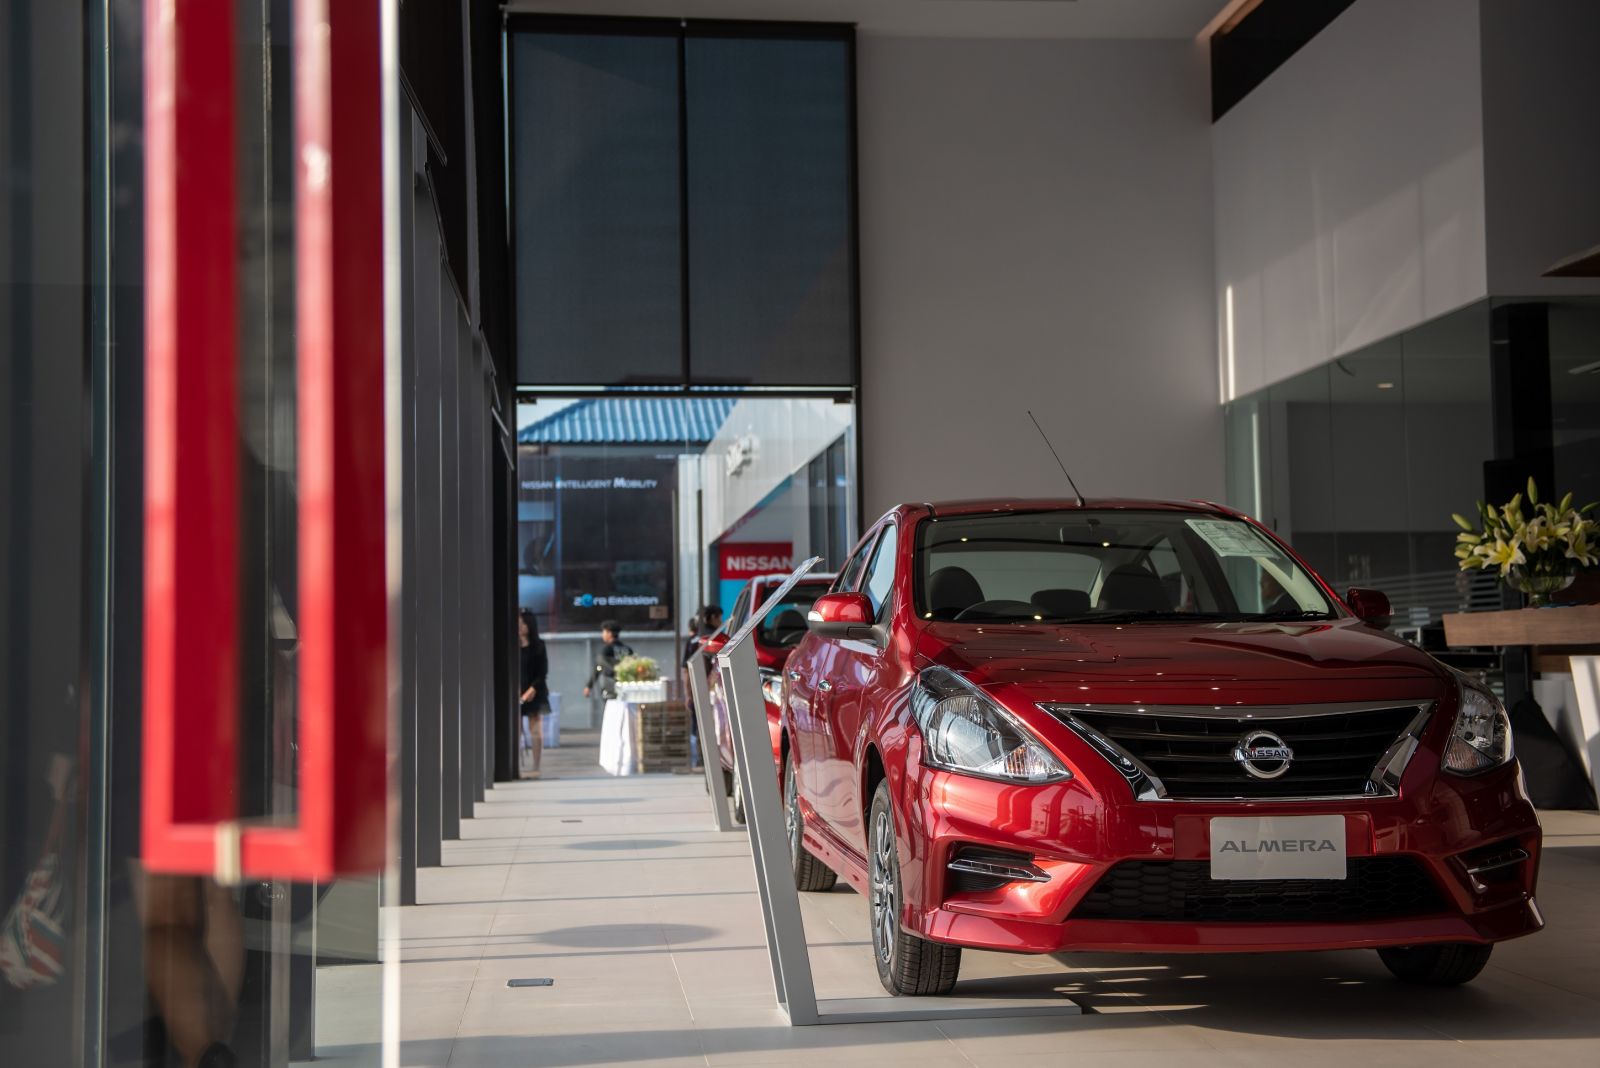 ภายใต้การดำเนินงานปรับโชว์รูมโฉมใหม่ Nissan Retail Concept (NRC) ให้ครอบคลุมทั่วประเทศ เพื่อยกระดับประสบการณ์ของลูกค้า รวมถึงการออกแบบโชว์รูมกระบวนการให้บริการ ตลอดถึงการพัฒนาเทคโนโลยีดิจิตอลทันสมัย โดยปัจจุบัน นิสสัน ได้ดำเนินการเผยโฉมโชว์รูม NRC ไปแล้วกว่า 400 แห่งใน 30 ประเทศ โดยตั้งเป้าดำเนินการให้สามารถครอบคลุมโชว์รูมกว่า 9,000 แห่ง ในกว่า 170 ประเทศทั่วโลก ภายในสิ้นปีงบประมาณพ.ศ. 2565 “แนวความคิด Nissan Retail Concept ใหม่นี้ เป็นการตอบสนองความเปลี่ยนแปลงของธุรกิจตามยุคสมัย และสะท้อนถึงความมุ่งมั่นของนิสสันที่จะส่งมอบประสบการณ์ที่มีคุณภาพและเป็นมาตรฐานเดียวกันทั่วโลกให้แก่ลูกค้าที่เข้ามาใช้บริการโชว์รูมและศูนย์บริการของนิสสัน ตั้งแต่การขายไปจนถึงการบริการ ที่เกินความคาดหวังของลูกค้าด้วย” อันตวน บาร์เตส ประธาน บริษัท นิสสัน มอเตอร์ (ประเทศไทย) จำกัด กล่าว ภายในพิธีเปิดตัวโชว์รูมแนวคิดใหม่ NRC ณัฐ ออโต้คาร์ ในฐานะผู้แทนจำหน่ายรถยนต์พลังงานไฟฟ้าของนิสสันอย่างเป็นทางการ พร้อมให้บริการแก่ลูกค้า ผู้ขับขี่ รถยนต์นิสสัน ลีฟ ได้อย่างครบวงจร  ด้วยบริการจากพนักงานระดับมืออาชีพ และสถานีชาร์จรถยนต์ไฟฟ้า เพื่อเตรียมความพร้อมก่อนการส่งมอบรถยนต์ นิสสัน ลีฟ ตั้งแต่เดือนเมษายนนี้ เป็นต้นไป       วิชัย เฟื่องทวีโชค ประธานบริษัท ณัฐ ออโต้คาร์ จำกัด กล่าวเสริมว่า “โชว์รูม นิสสัน ณัฐ ออโต้คาร์  บ้านจั่น พร้อมต้อนรับลูกค้าที่สนใจรถยนต์ไฟฟ้า นิสสัน ลีฟ โดยเรามีเจ้าหน้าที่ฝ่ายขายที่ได้รับการฝึกอบรมและมีความรู้เกี่ยวกับผลิตภัณฑ์เป็นอย่างดี นอกจากนี้ ลูกค้า นิสสัน ลีฟ ยังอุ่นใจด้วยบริการสถานีชาร์จรถยนต์ไฟฟ้าจำนวน 2 สถานี โดยเจ้าของรถยนต์ นิสสัน ลีฟ สามารถใช้บริการชาร์จแบตเตอรี่ไฟฟ้าที่โชว์รูมได้โดยไม่มีค่าใช้จ่ายเพิ่มเติม และยังเพลิดเพลินไปกับอาหารว่างและเครื่องดื่มที่เราจัดเตรียมไว้รับรองได้อีกด้วย”   พิธีเปิดโชว์รูม นิสสัน ณัฐ ออโต้คาร์ บ้านจั่น อย่างเป็นทางการ ได้รับเกียรติจาก วัฒนา พุฒิชาติ ผู้ว่าราชการจังหวัดอุดรธานี พร้อมด้วยวิชัย เฟื่องทวีโชค ประธาน ณัฐ ออโต้คาร์ และอันตวน บาร์เตส ประธาน นิสสัน ประเทศไทย เข้าร่วมงาน โดย นิสสัน ณัฐ ออโต้คาร์ บ้านจั่น เป็นโชว์รูมและศูนย์บริการนิสสันแห่งที่ 2 ของณัฐ ออโต้คาร์ ในจังหวัดอุดรธานี  ณัฐ ออโต้คาร์ ถือเป็นผู้จำหน่ายรถยนต์นิสสันระดับแถวหน้าในภาคอีสานตอนบน โดยโชว์รูมแห่งแรกตั้งอยู่บริเวณแยกสามพร้าว จังหวัดอุดรธานี รองรับรถยนต์เข้ารับบริการได้สูงสุดกว่า 1,200 คันต่อเดือน และมีบริการพ่นสีรถยนต์ระดับพรีเมี่ยมที่รองรับลูกค้าได้กว่า 400 คันต่อเดือน นอกจากนี้ยังเป็นโชว์รูมขนาดใหญ่ จัดแสดงรถยนต์ได้ถึง 8 คัน และปัจจุบันให้บริการรถยนต์กว่า 600 คันต่อเดือน ปัจจุบัน นิสสัน มีเครือข่ายโชว์รูมและศูนย์บริการ 182 แห่ง ครอบคลุมทั่วประเทศ สำหรับลูกค้าที่สนใจรถยนต์นิสสันหรือต้องการสอบถามข้อมูลเพิ่มเติมเกี่ยวกับข้อเสนอสุดพิเศษ สามารถเยี่ยมชมโชว์รูมและศูนย์บริการนิสสัน สอบถามข้อมูลได้ที่ Call Center ที่ 02-401-9600